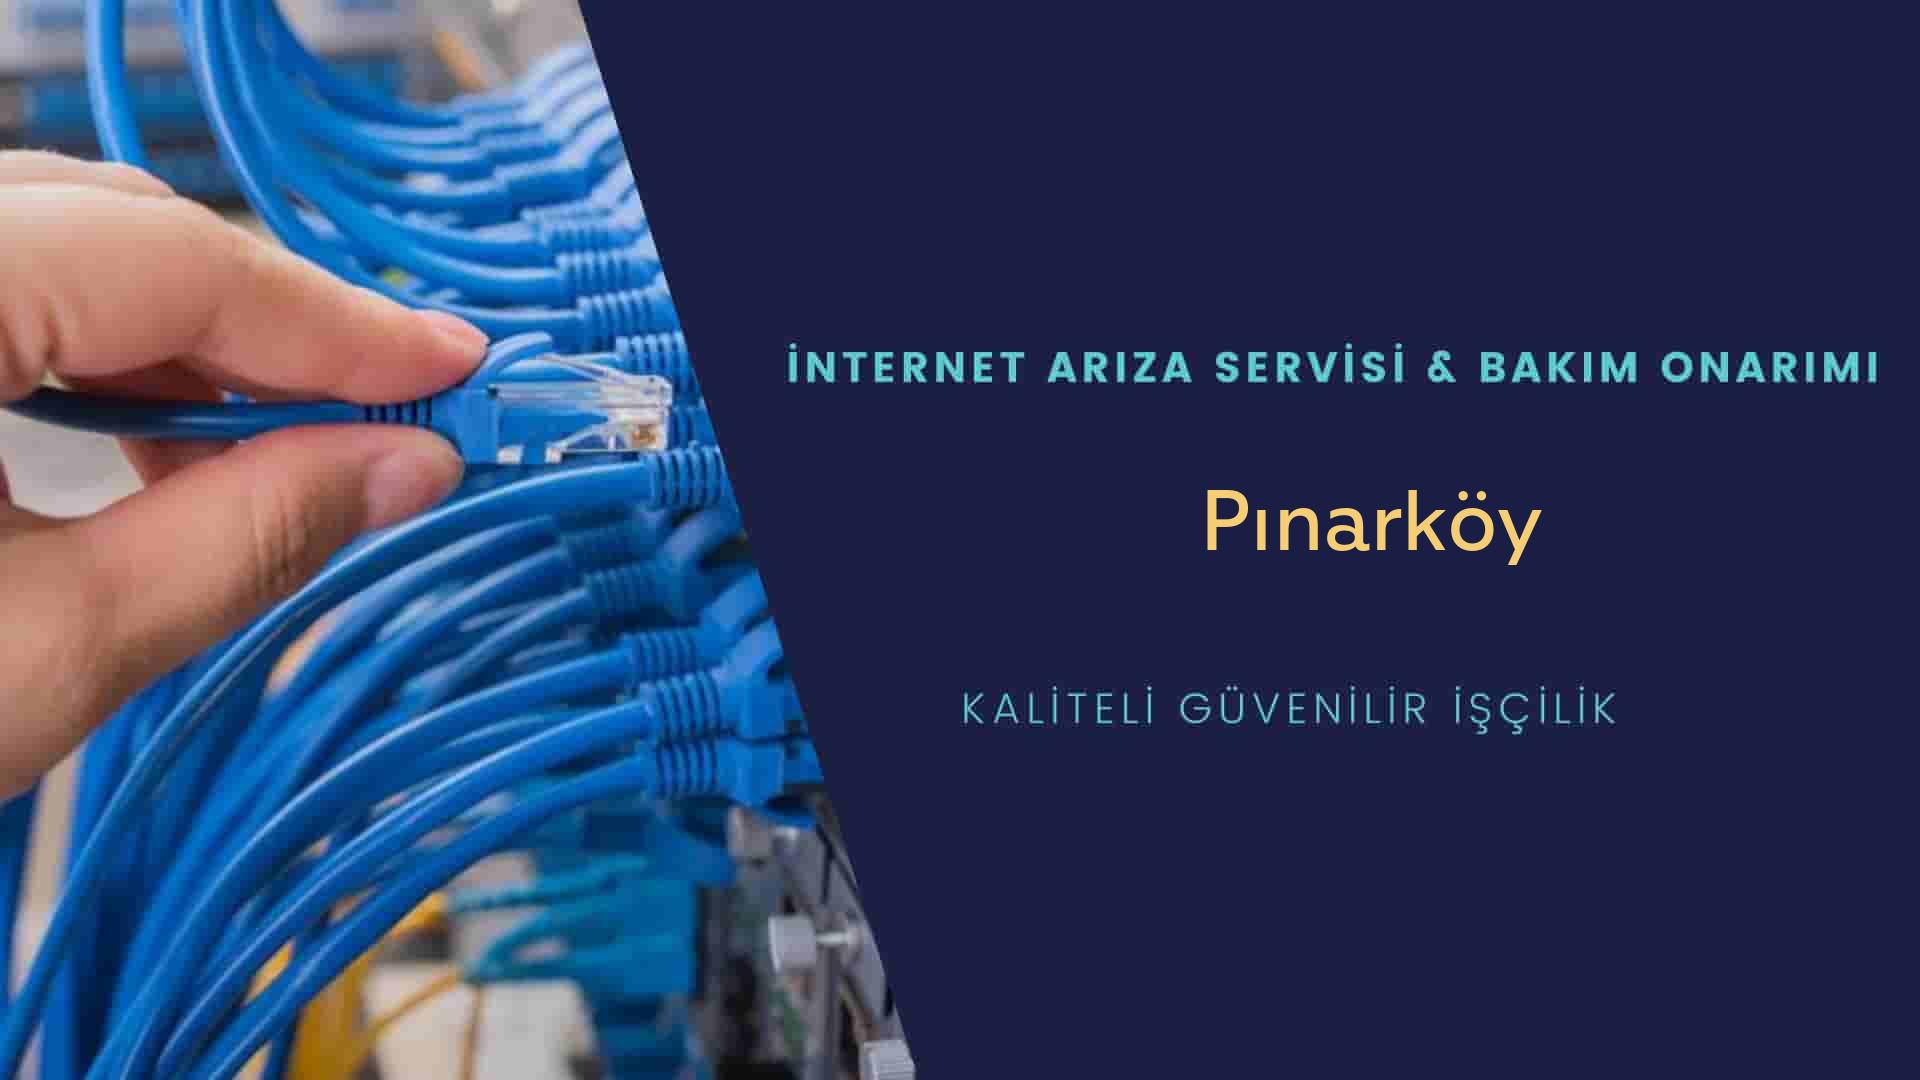 Pınarköy internet kablosu çekimi yapan yerler veya elektrikçiler mi? arıyorsunuz doğru yerdesiniz o zaman sizlere 7/24 yardımcı olacak profesyonel ustalarımız bir telefon kadar yakındır size.